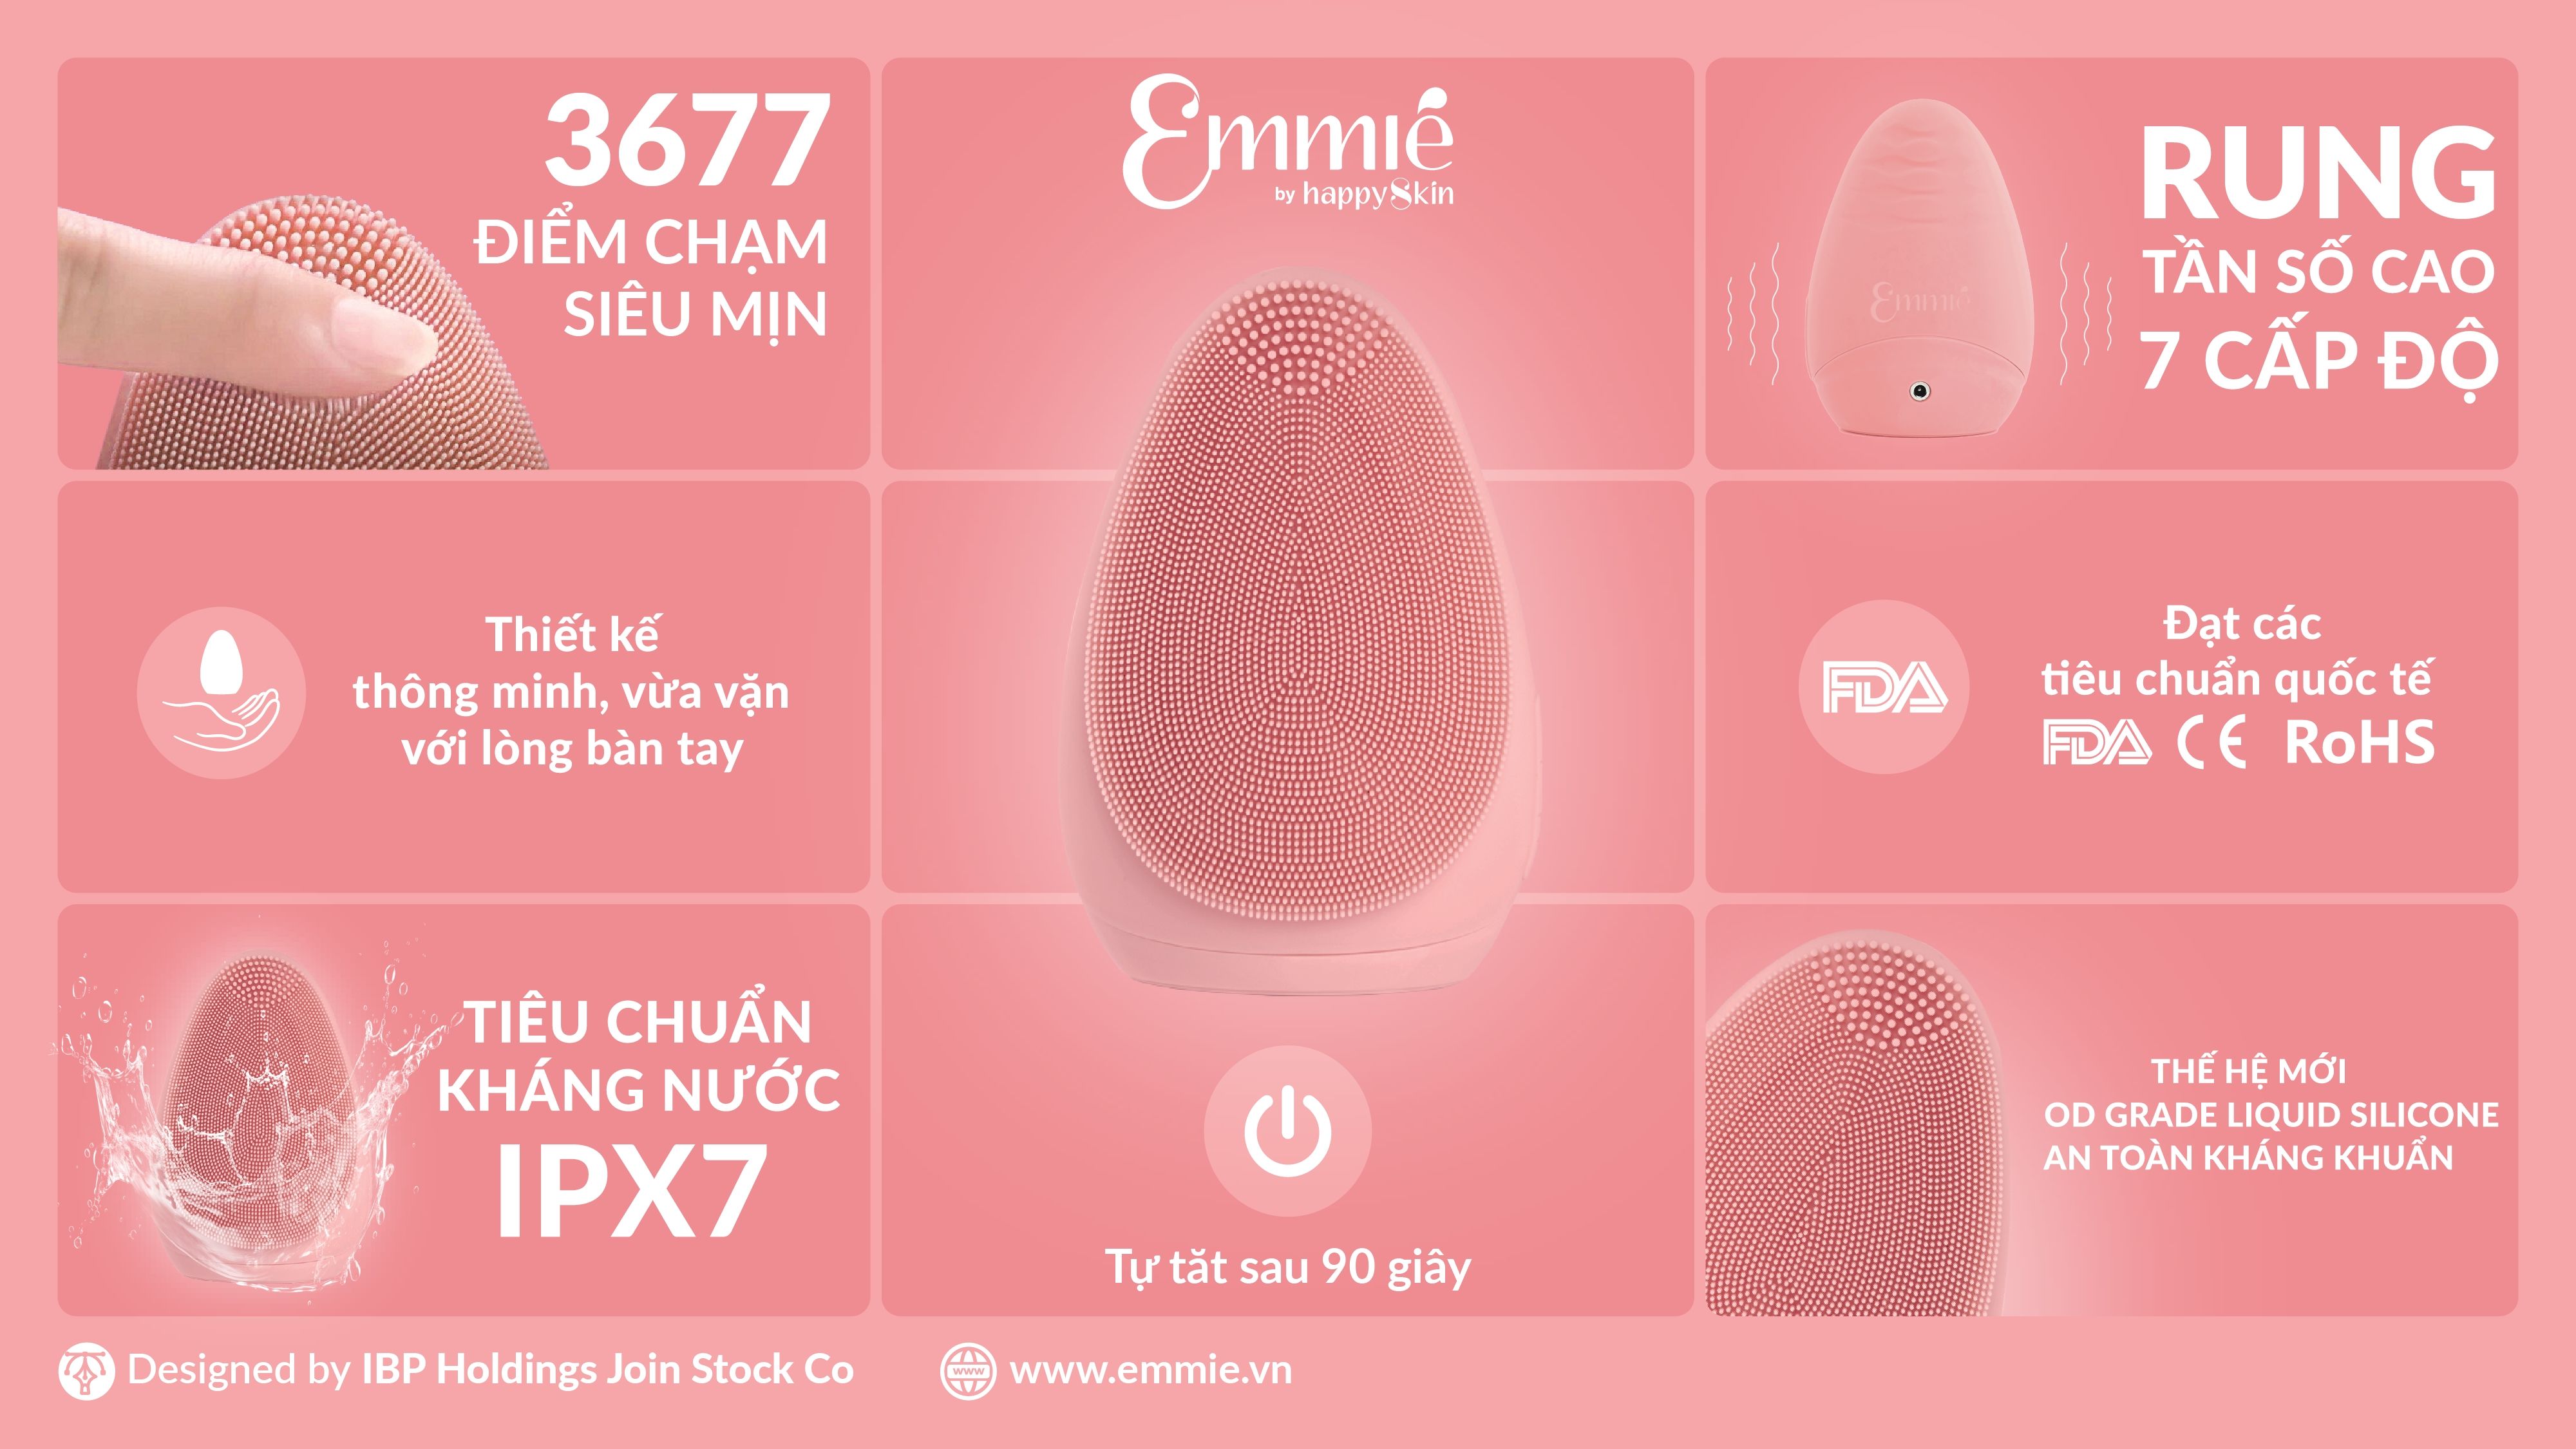 Máy Rửa Mặt Emmié Premium Facial Cleansing Brush - Đạt Chứng Nhận FDA - So Sweet